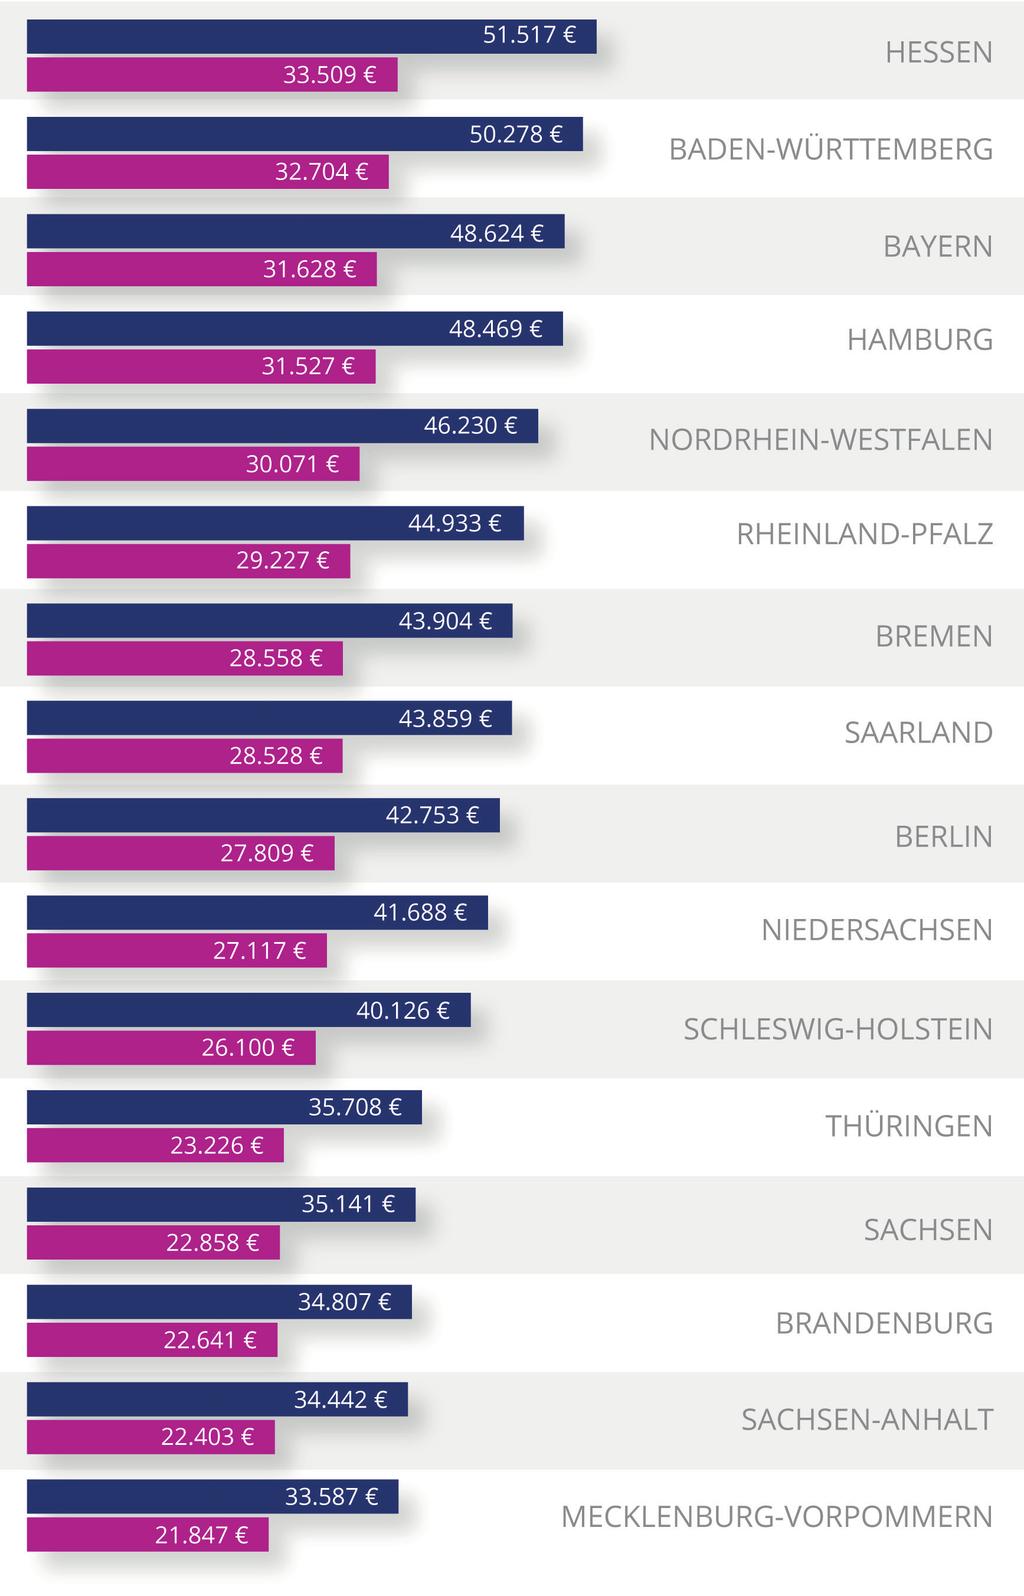 Berufseinsteiger nach Bundesland Hessen ist für Berufseinsteiger das attraktivste Bundesland. Akademiker starten hier im Durchschnitt bei 51.